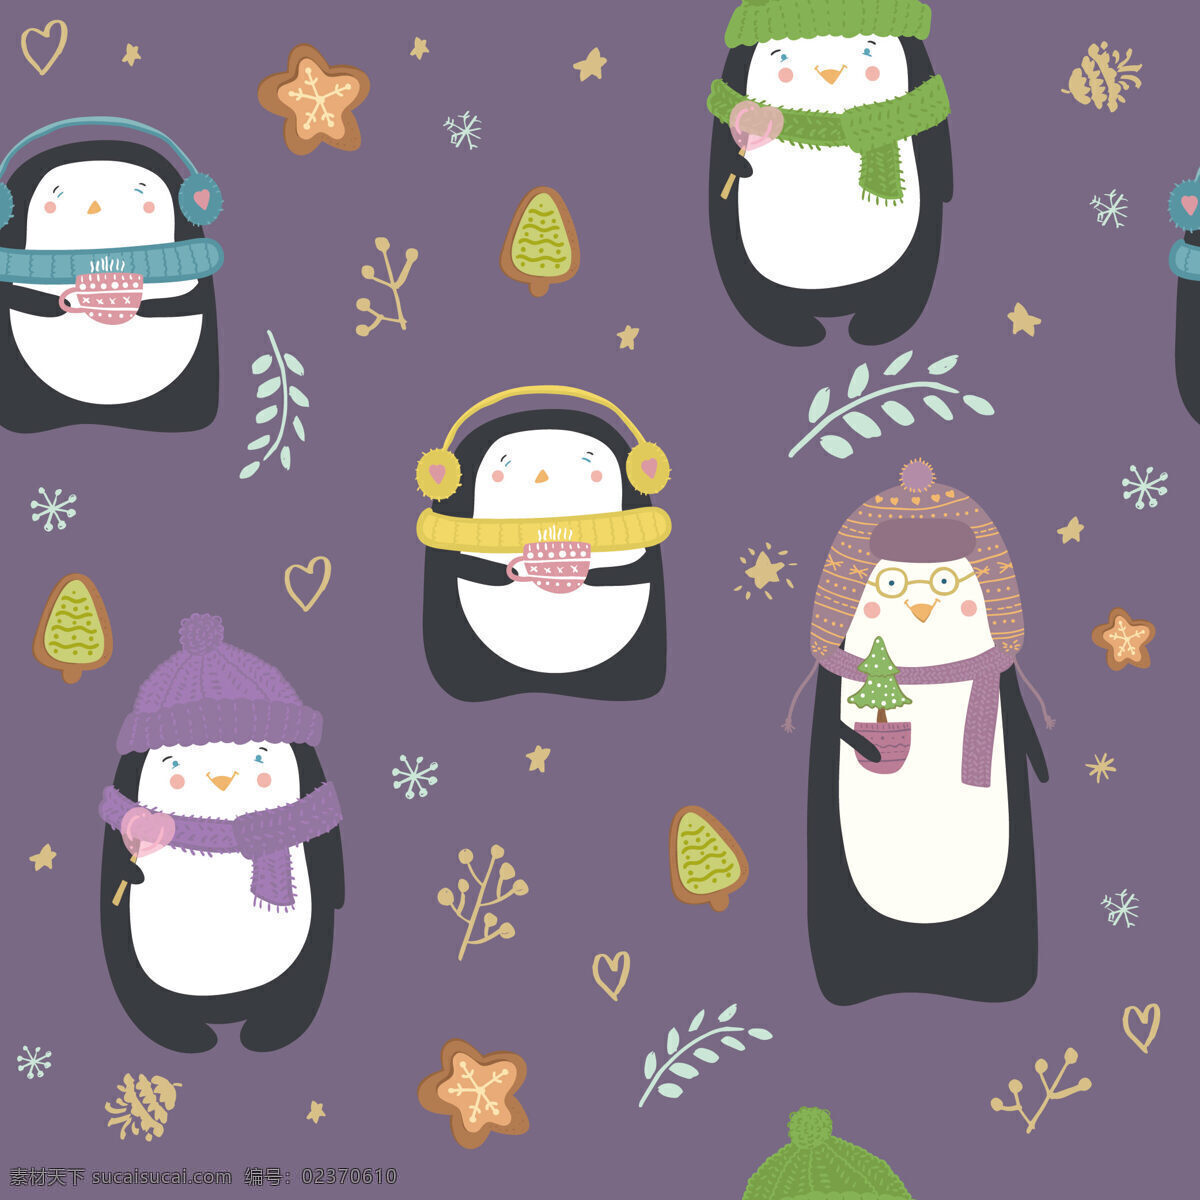 冬季 浪漫 紫色 企鹅 壁纸 图案 装饰设计 紫色底色 壁纸图案 企鹅图案 小星星 树叶